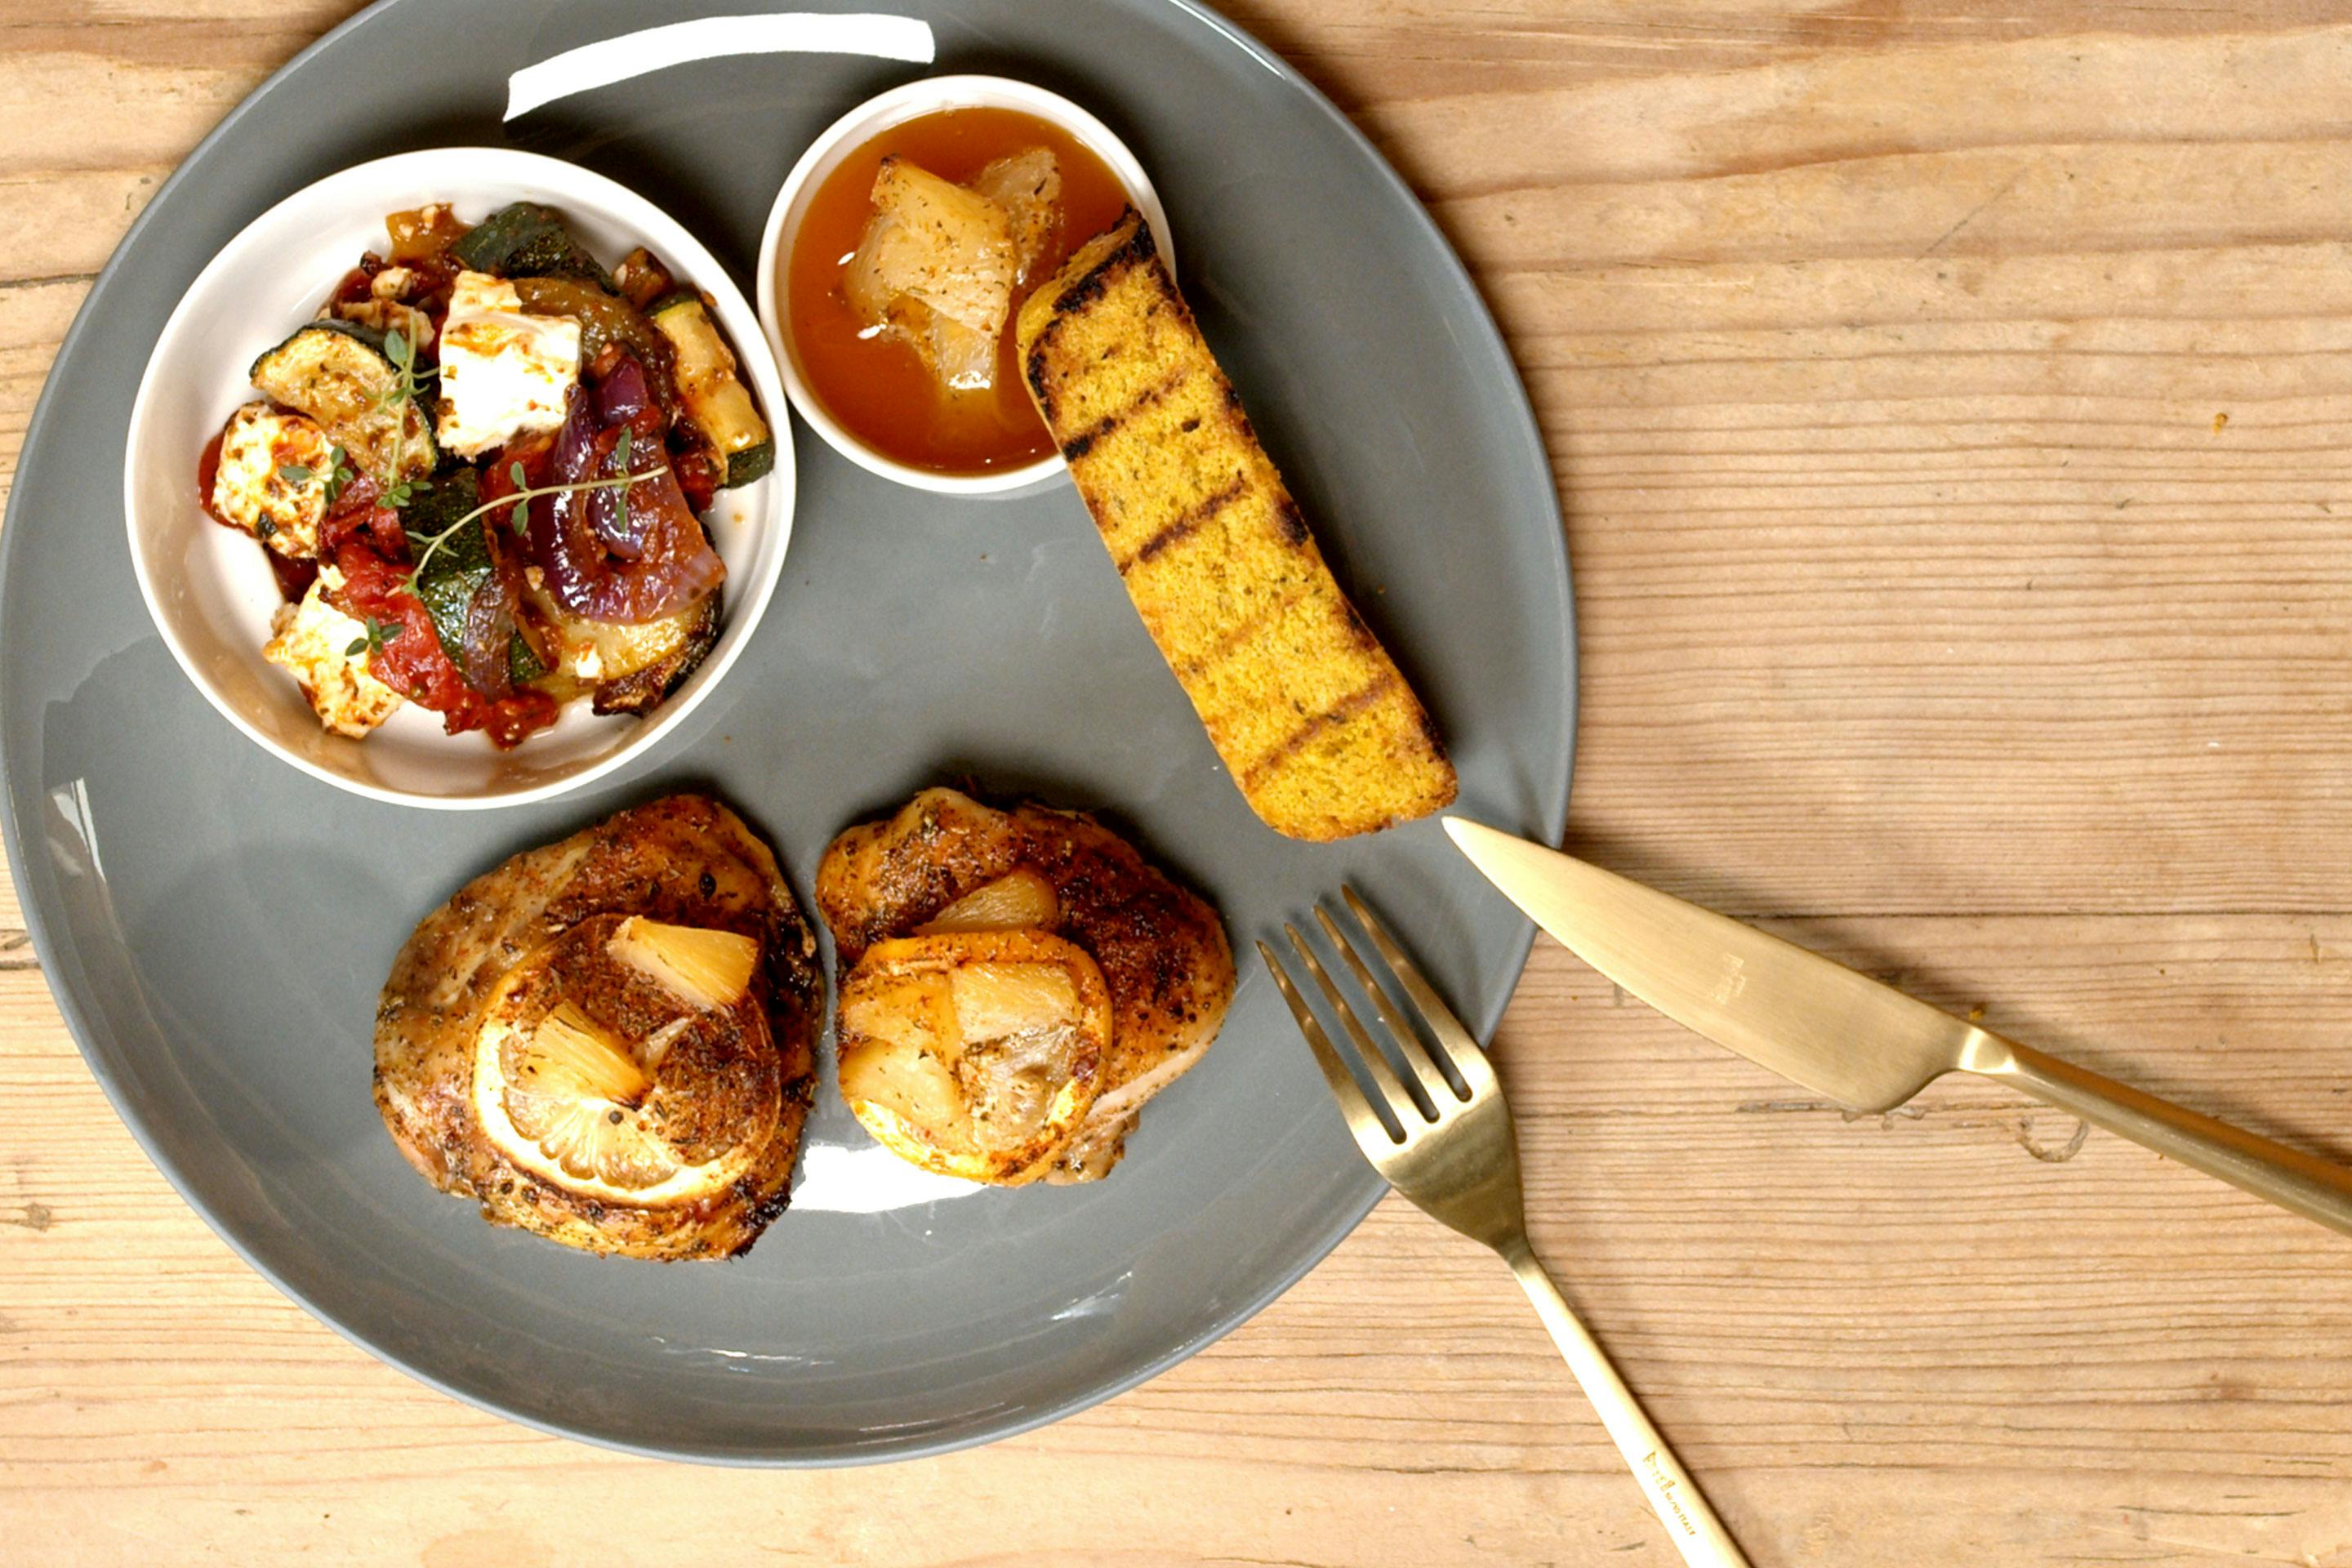 Huhn Hawaii Style mit gegrilltem Polentasterz auf einem dunkelgrauen Teller mit einem Schälchen voller Ratatouille, mit goldenem Besteck